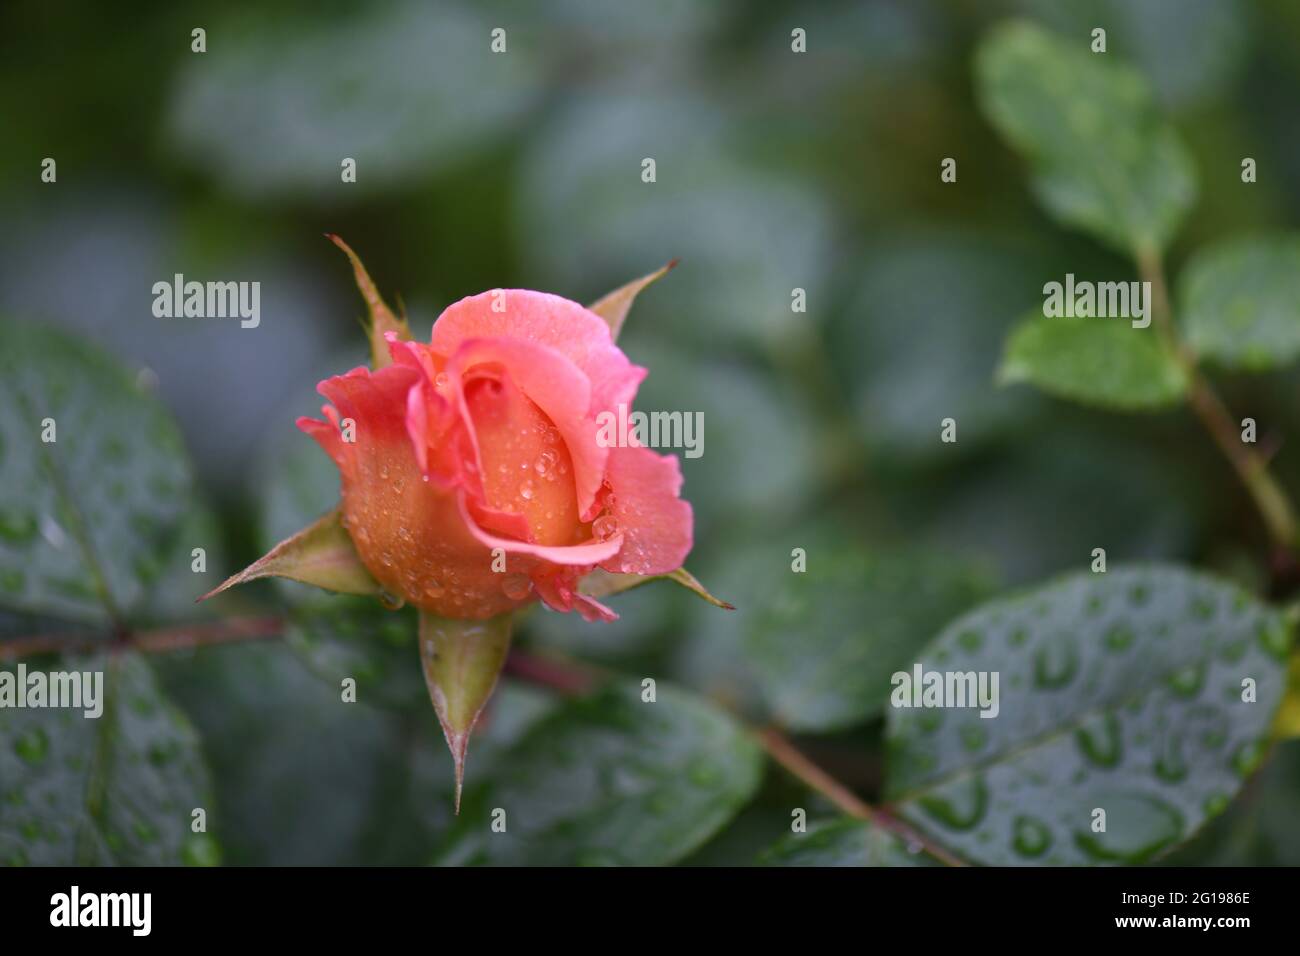 Wunderschöne, einzelne orange färbige Rosenknospe - rosaorange Rosenblüte, sich öffnende Rose - gegen das grüne Blattwerk nach einem Regenguss Stockfoto